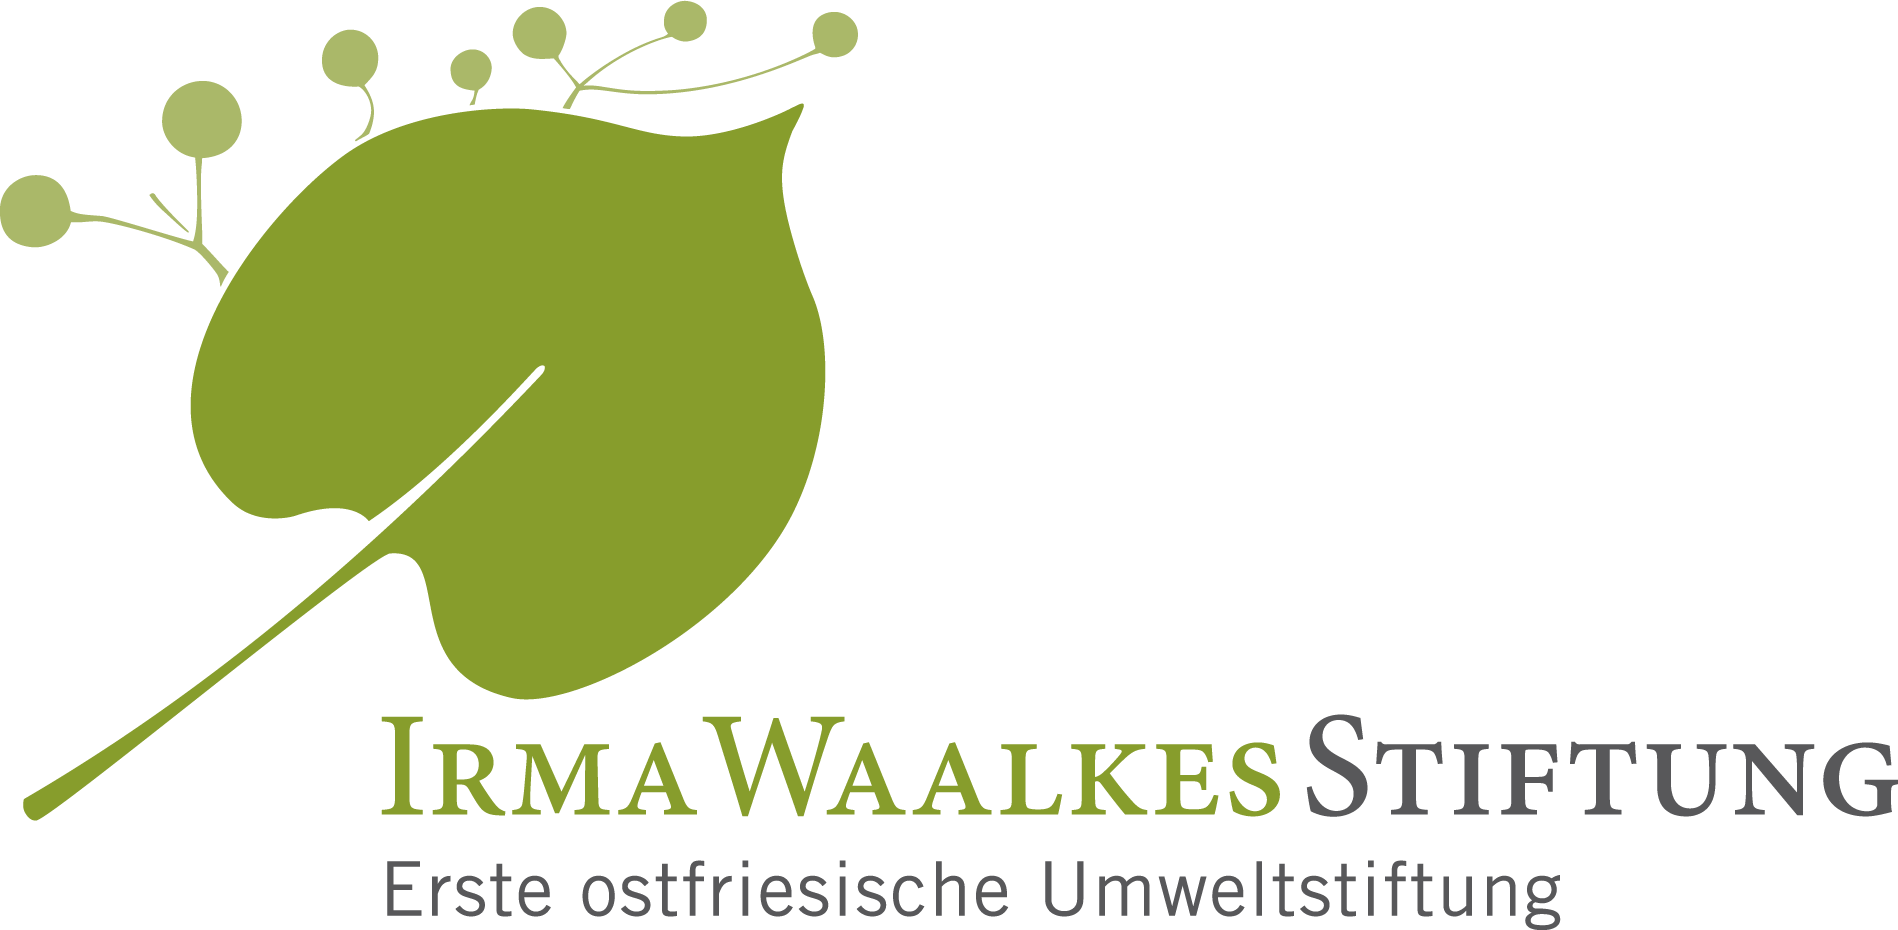 Irma Waalkes Stiftung